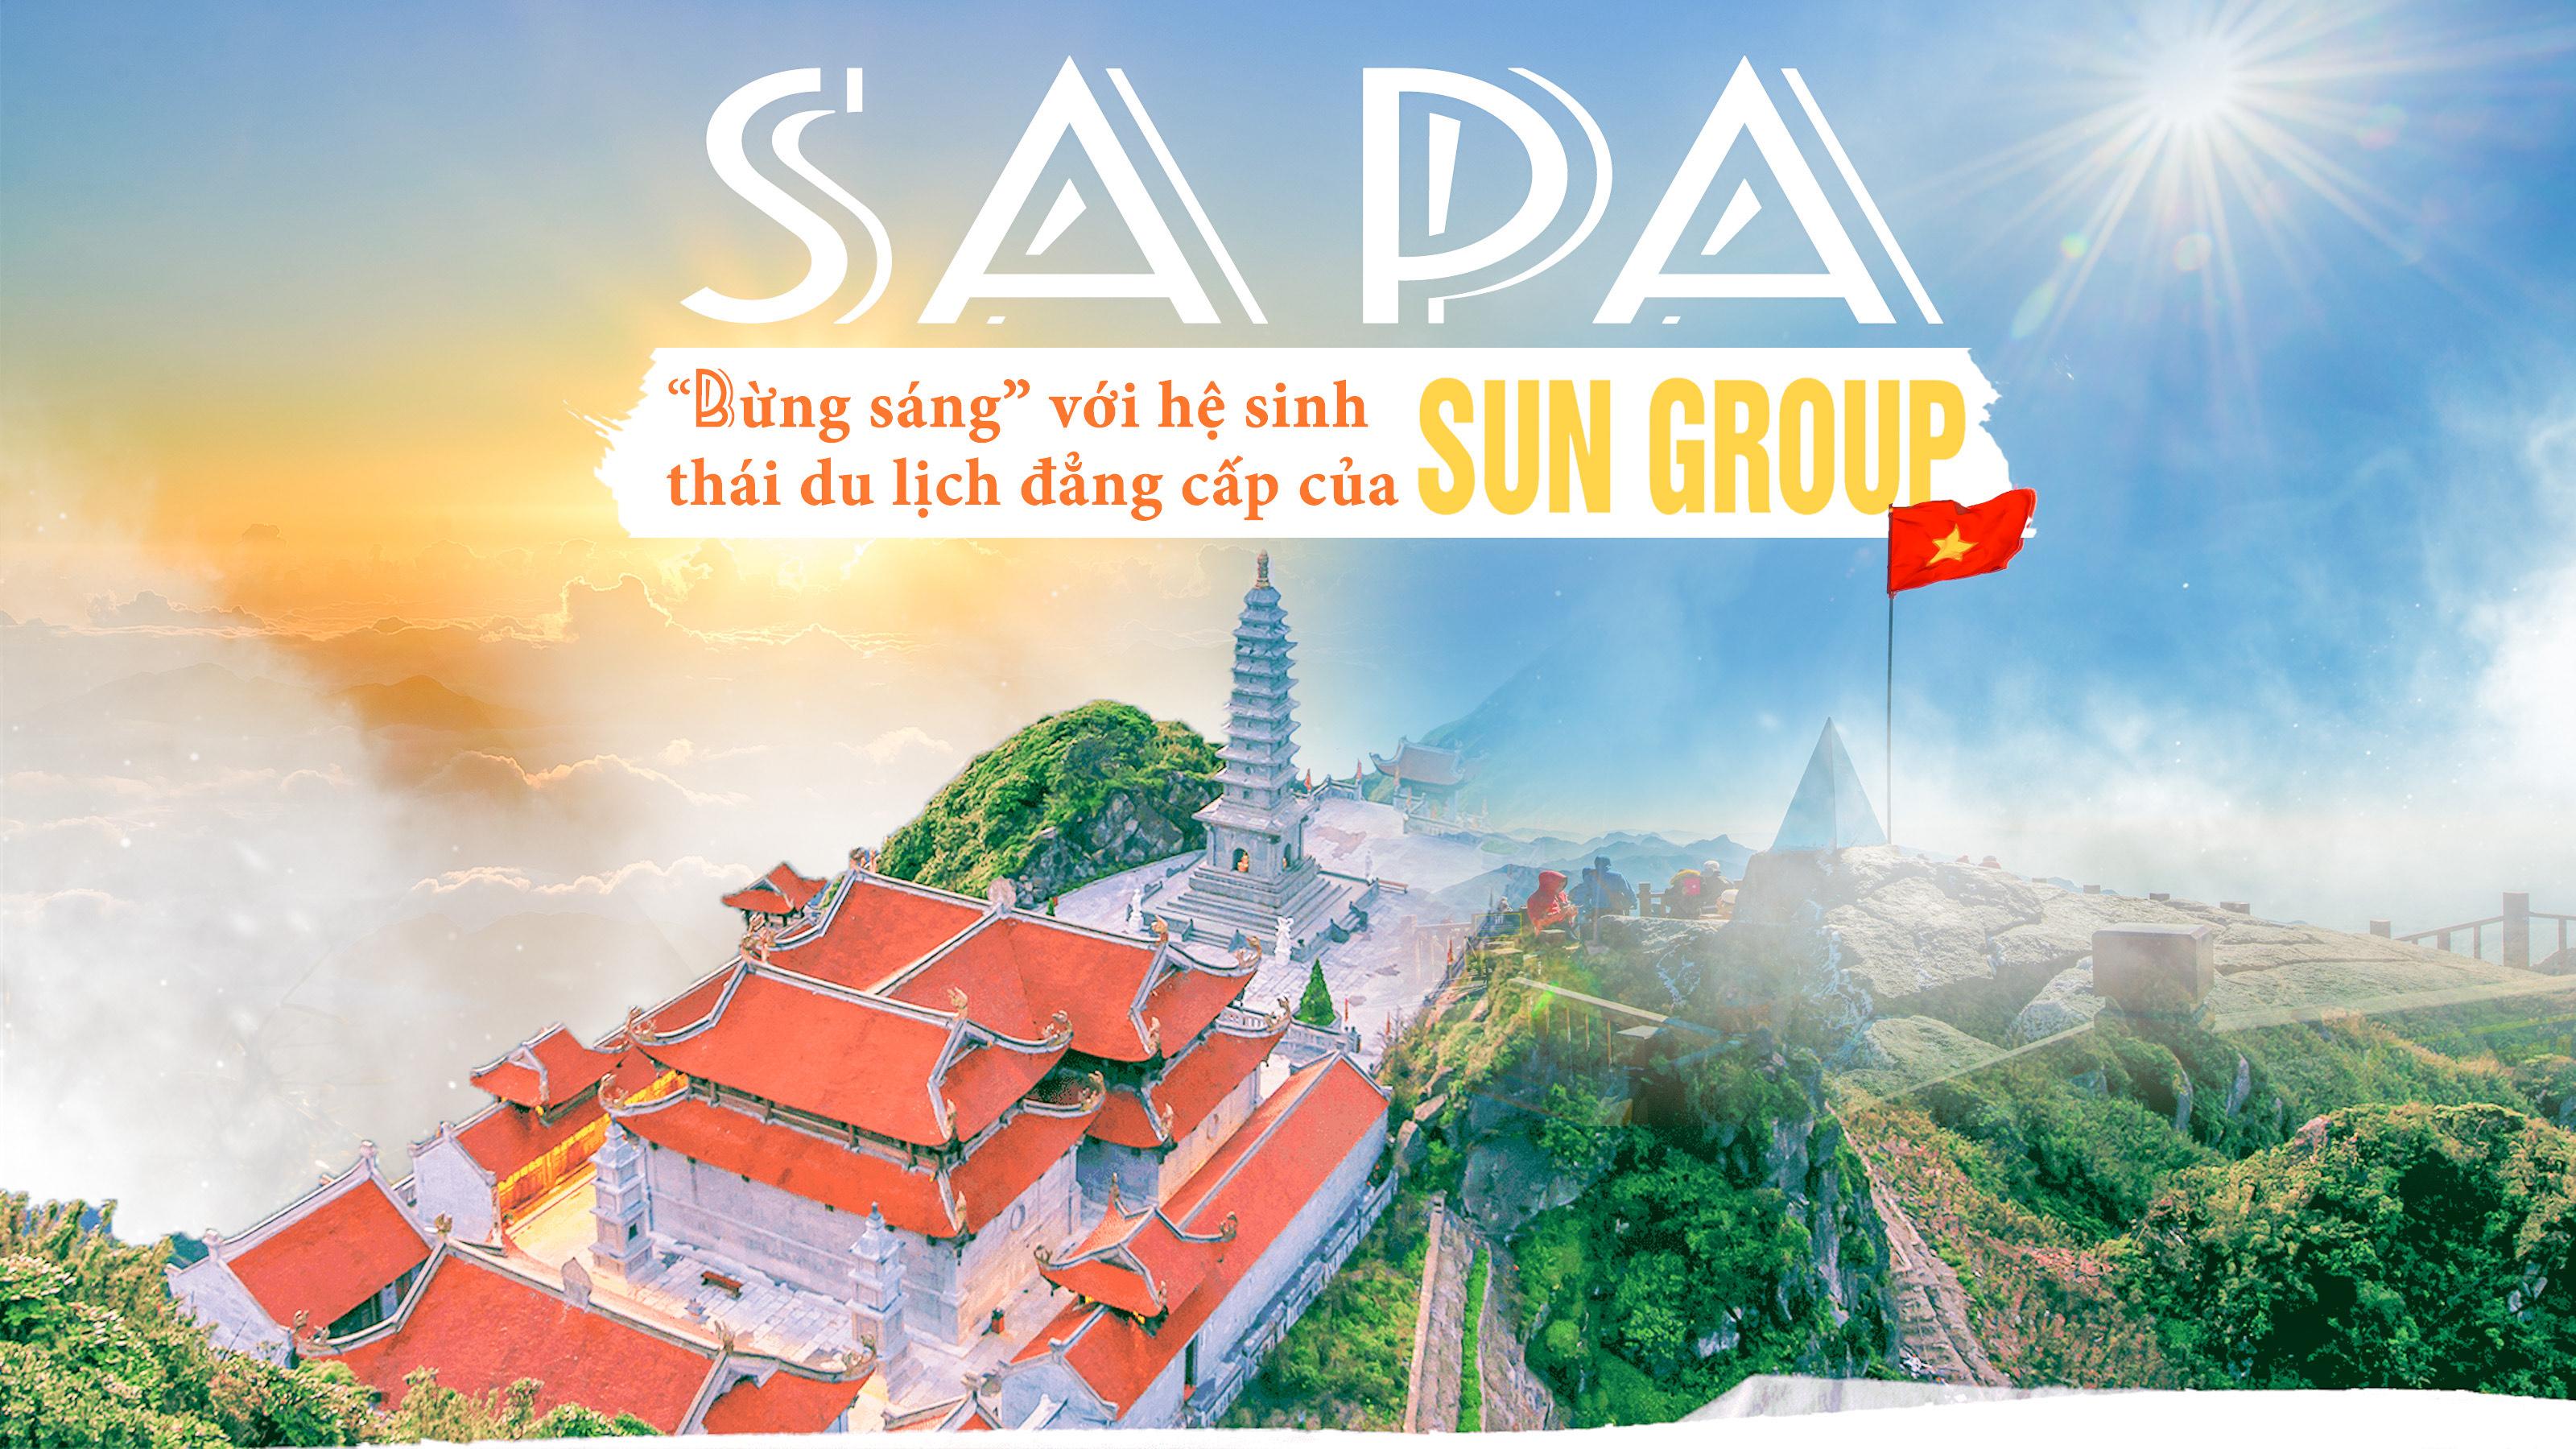 Sa Pa 'bừng sáng' với hệ sinh thái du lịch đẳng cấp của Sun Group